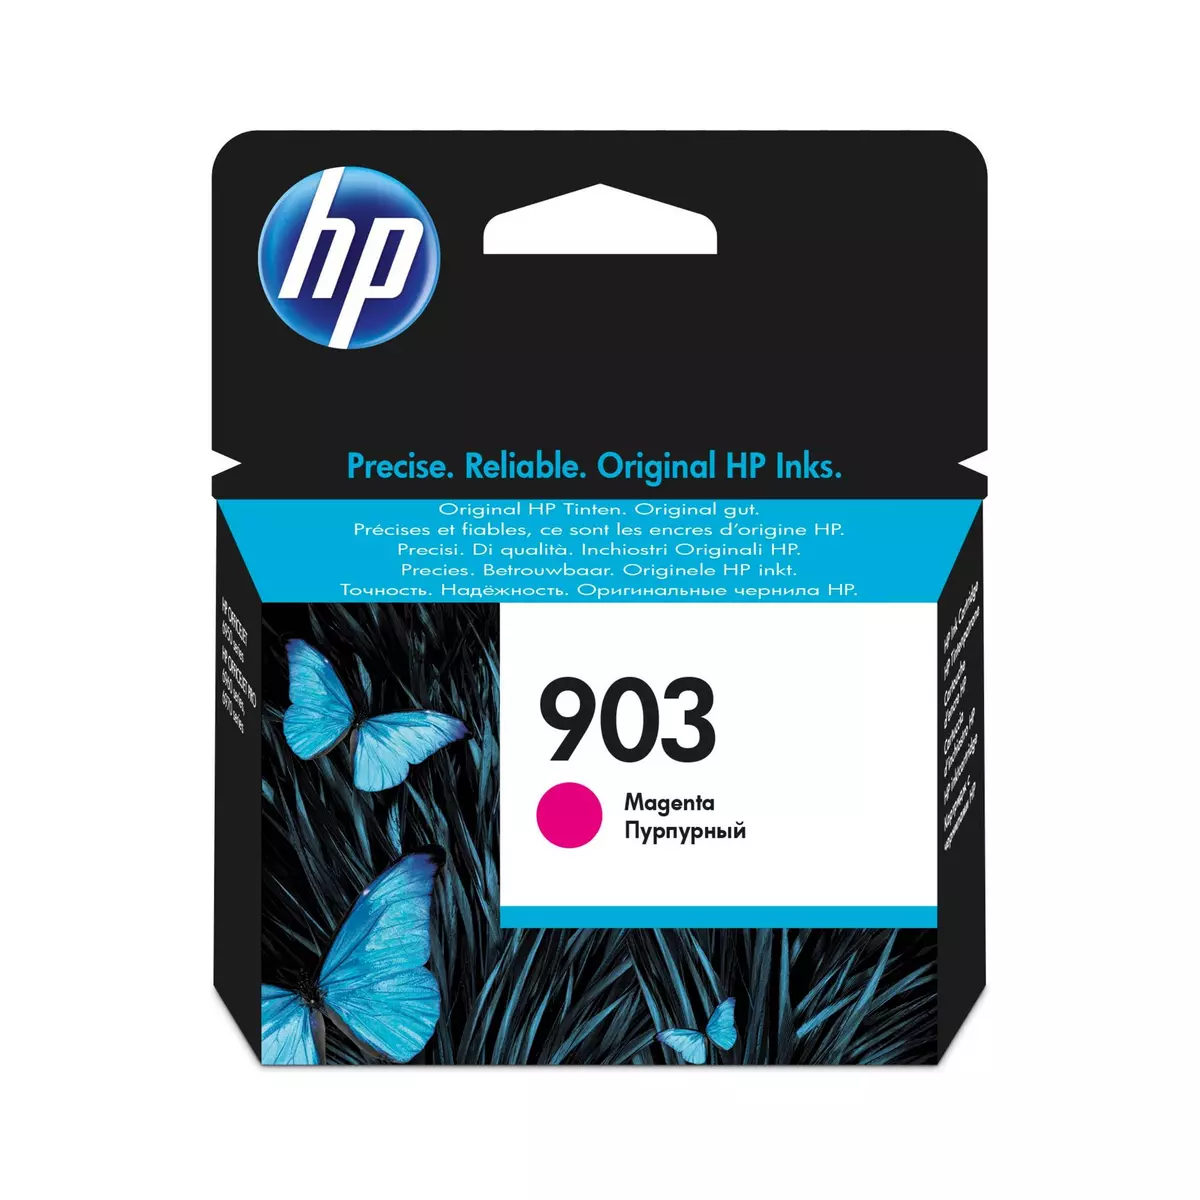 HP 903 Cartouche d'Encre Magenta Authentique (T6L91AE) pour HP OfficeJet  6950, HP OfficeJet Pro 6960 / 6970